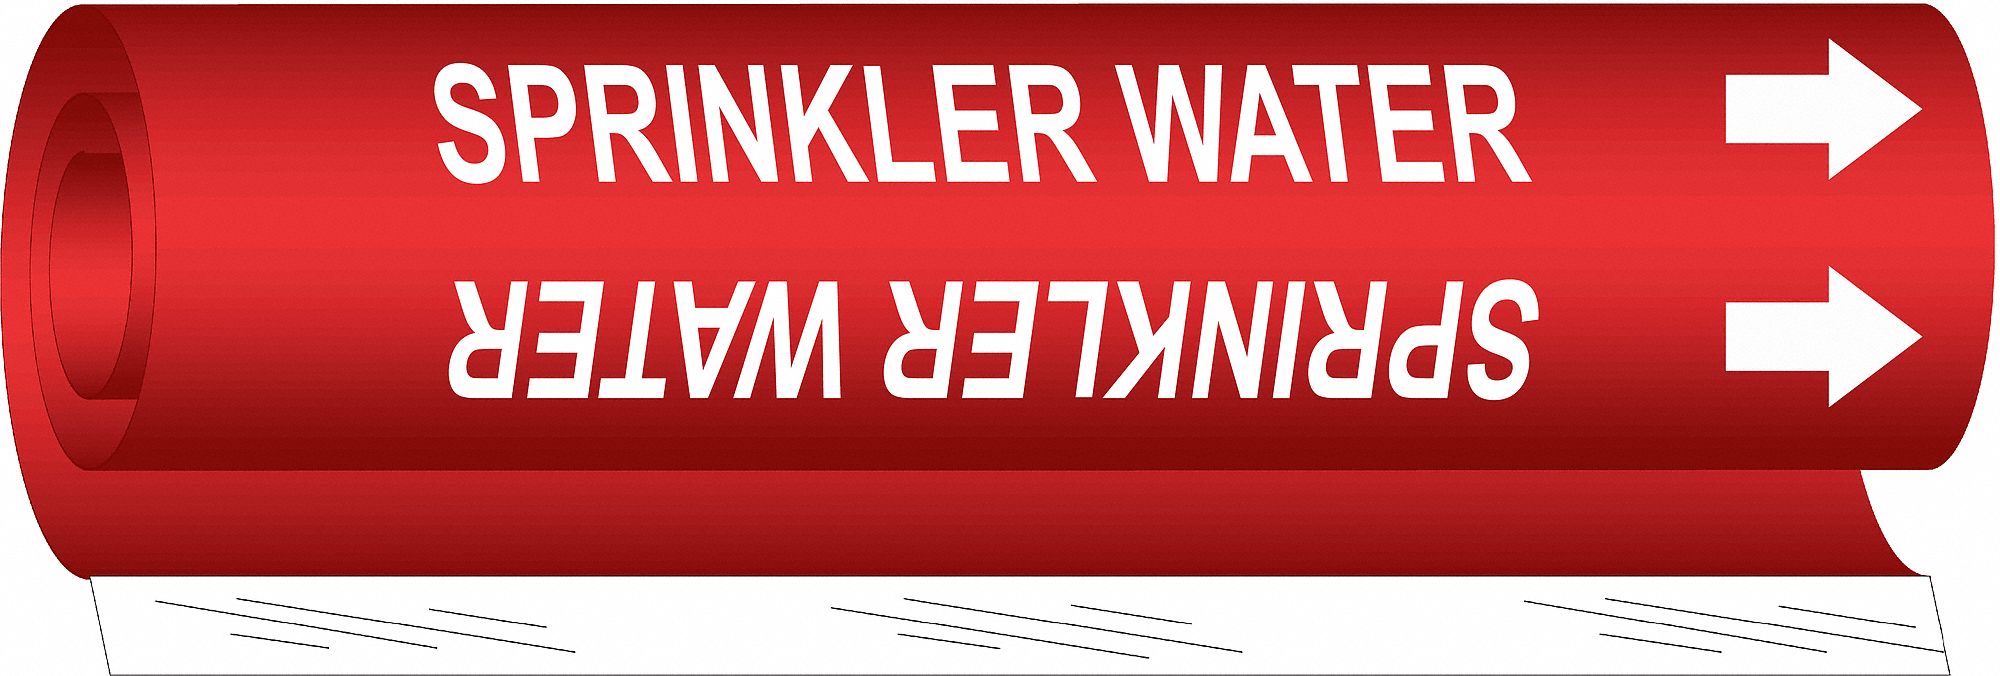 Pipe Mrkr,Sprinkler Water,2-1/2to7-7/8In